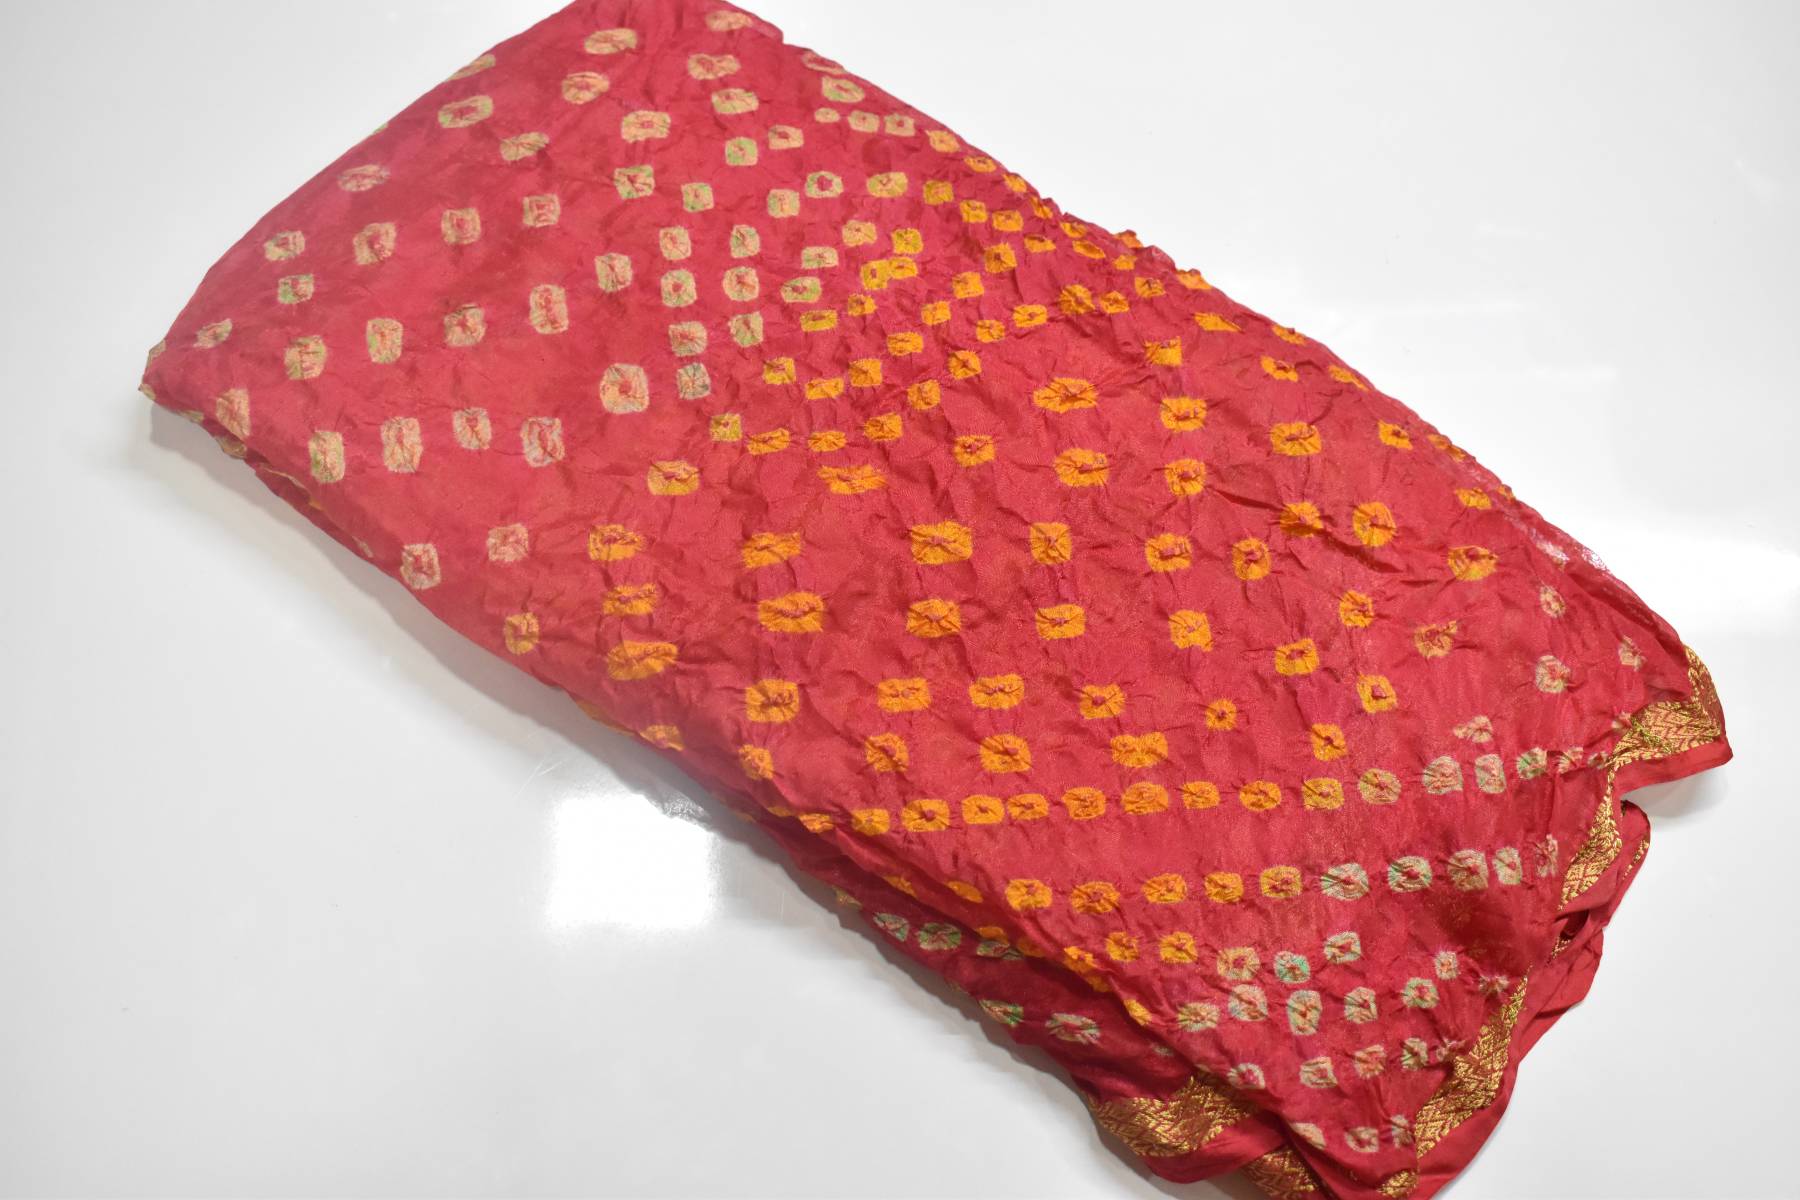 Jaipur Bandhani Saree in full red color with zari border